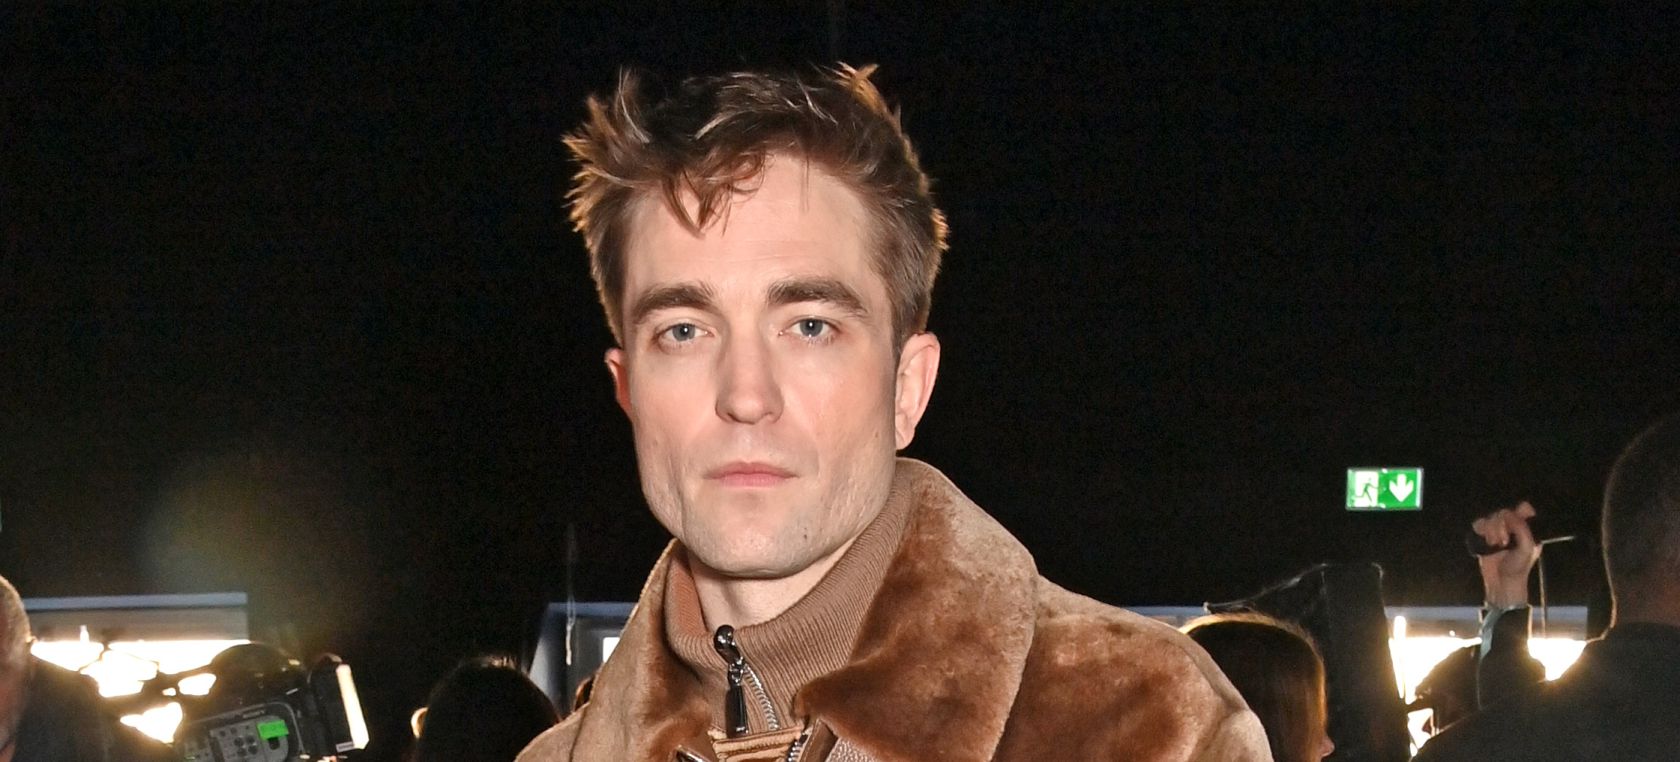 Robert Pattinson, sobre sus dietas imposibles para los rodajes: “Comí solo patatas con sal por dos semanas”